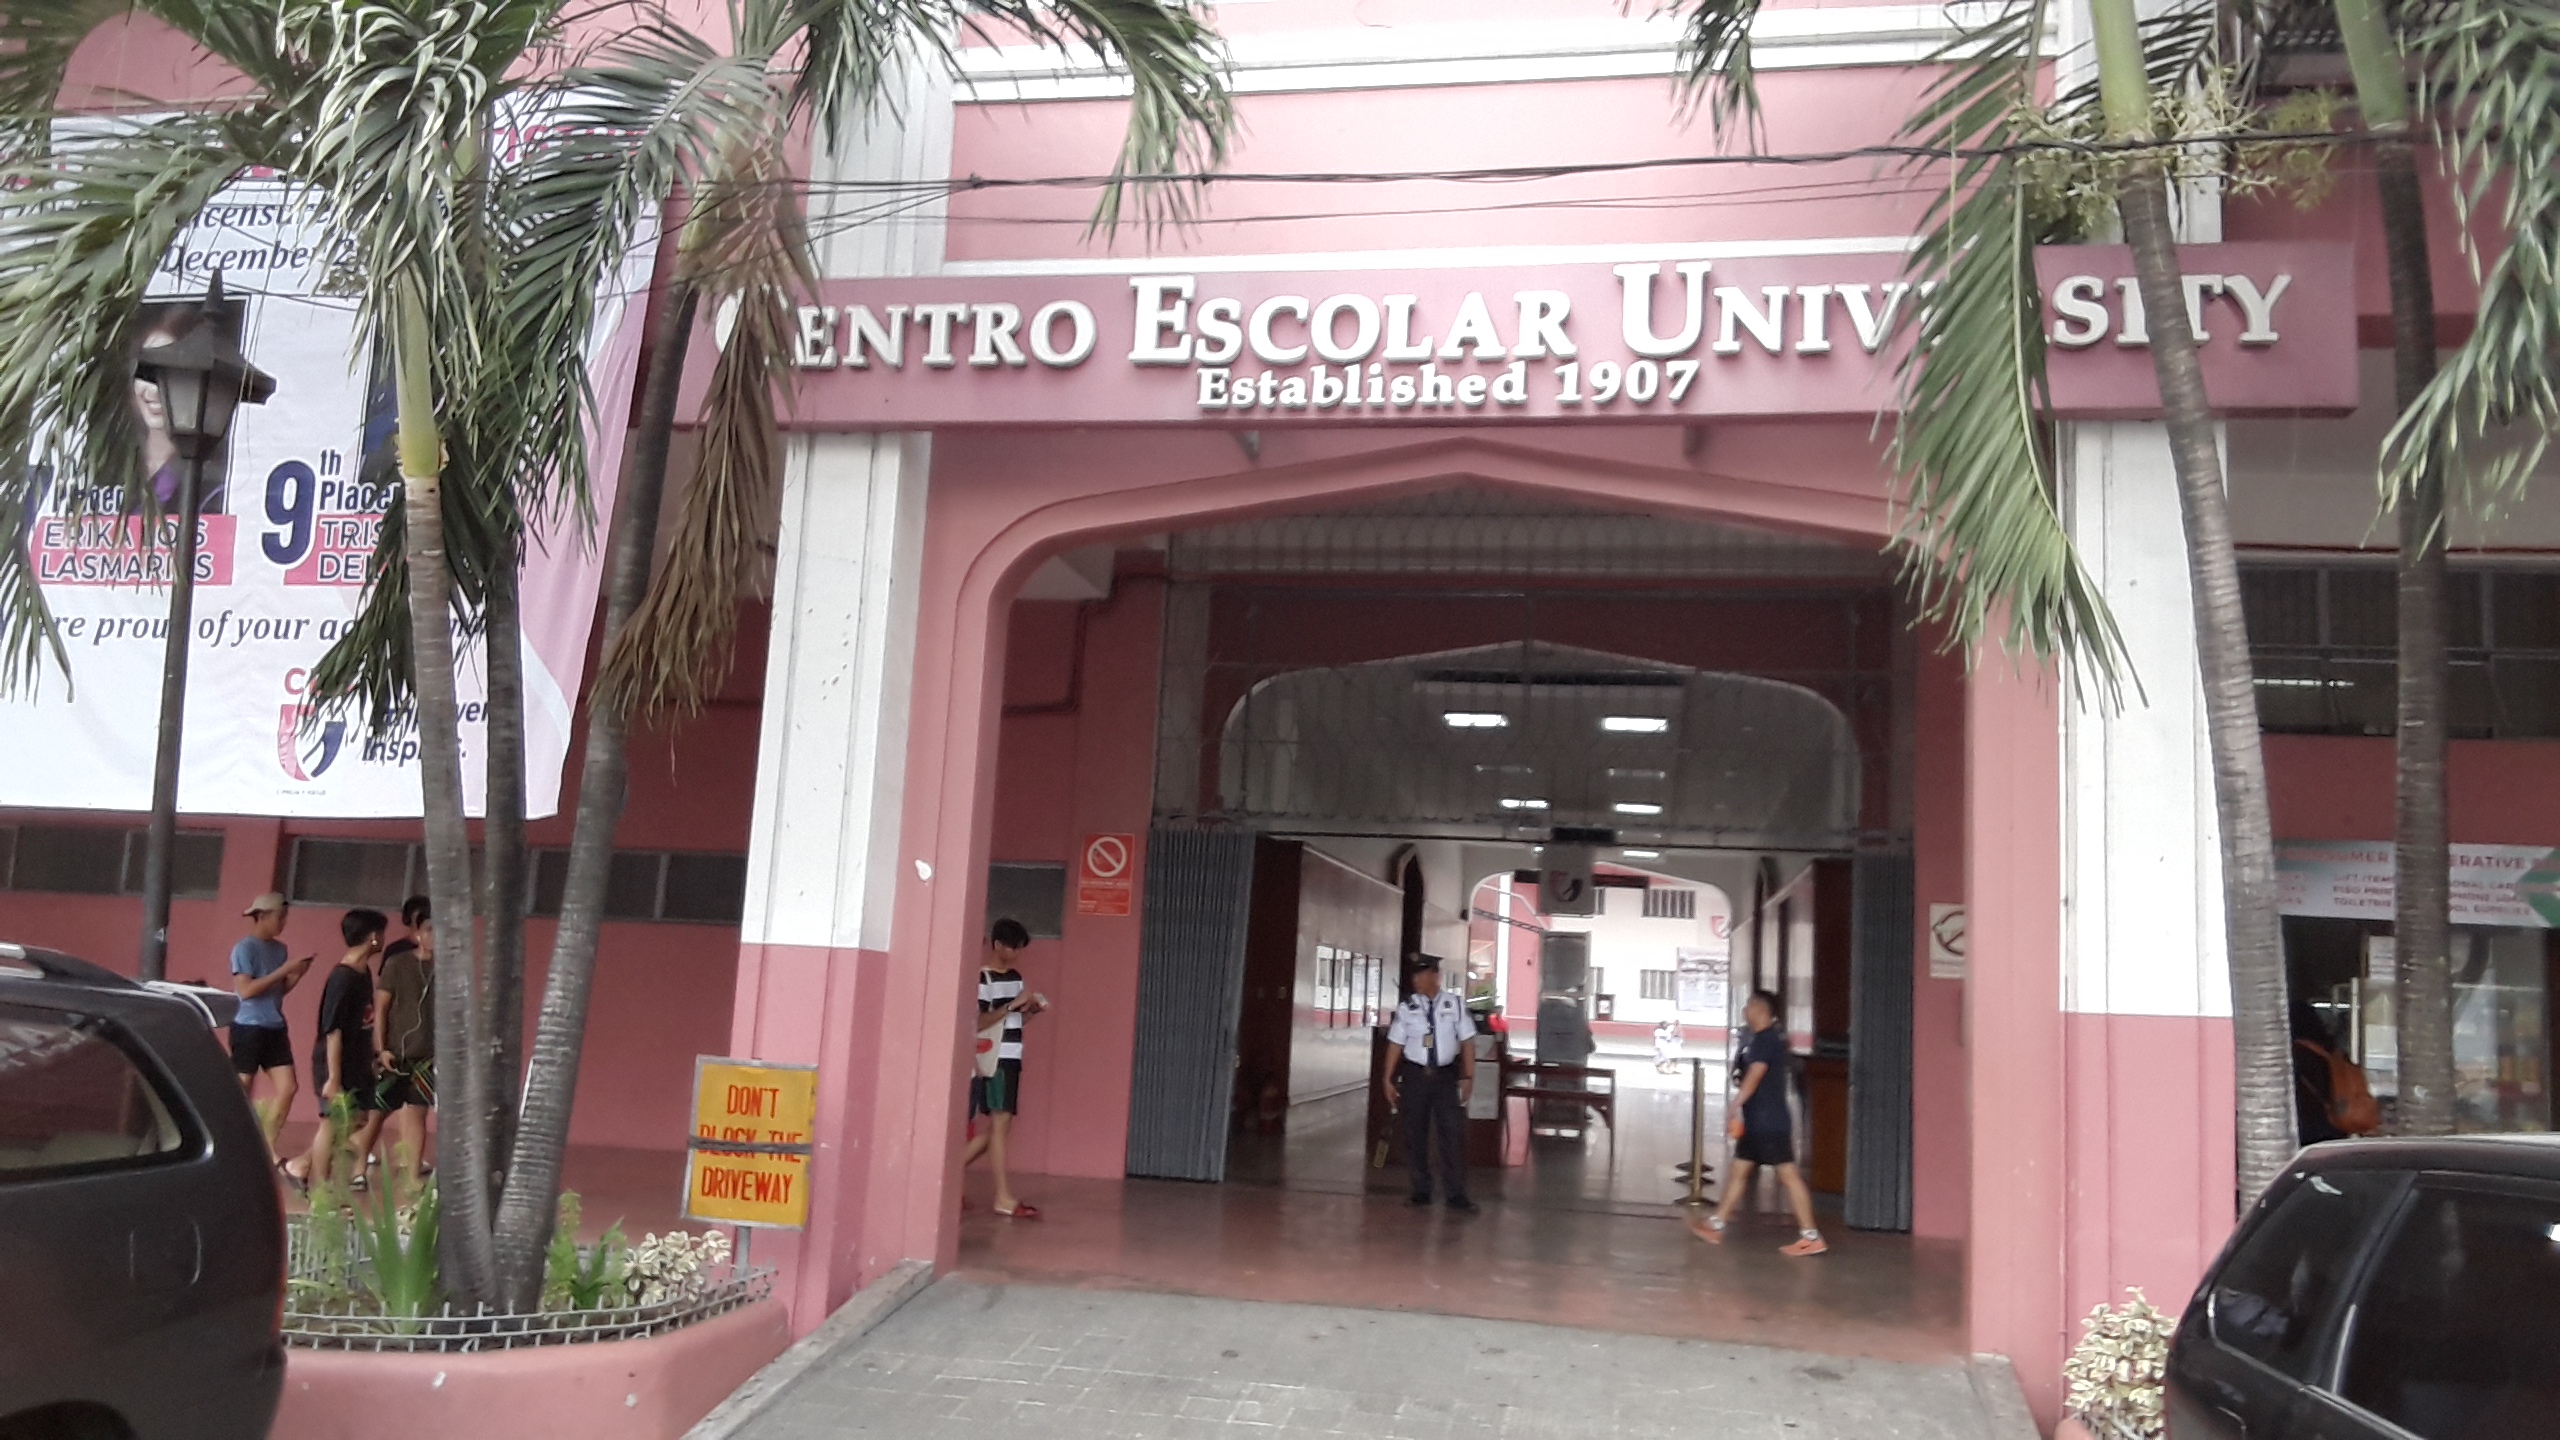 セントロエスカラー大学（Centro Escolar University )の入口